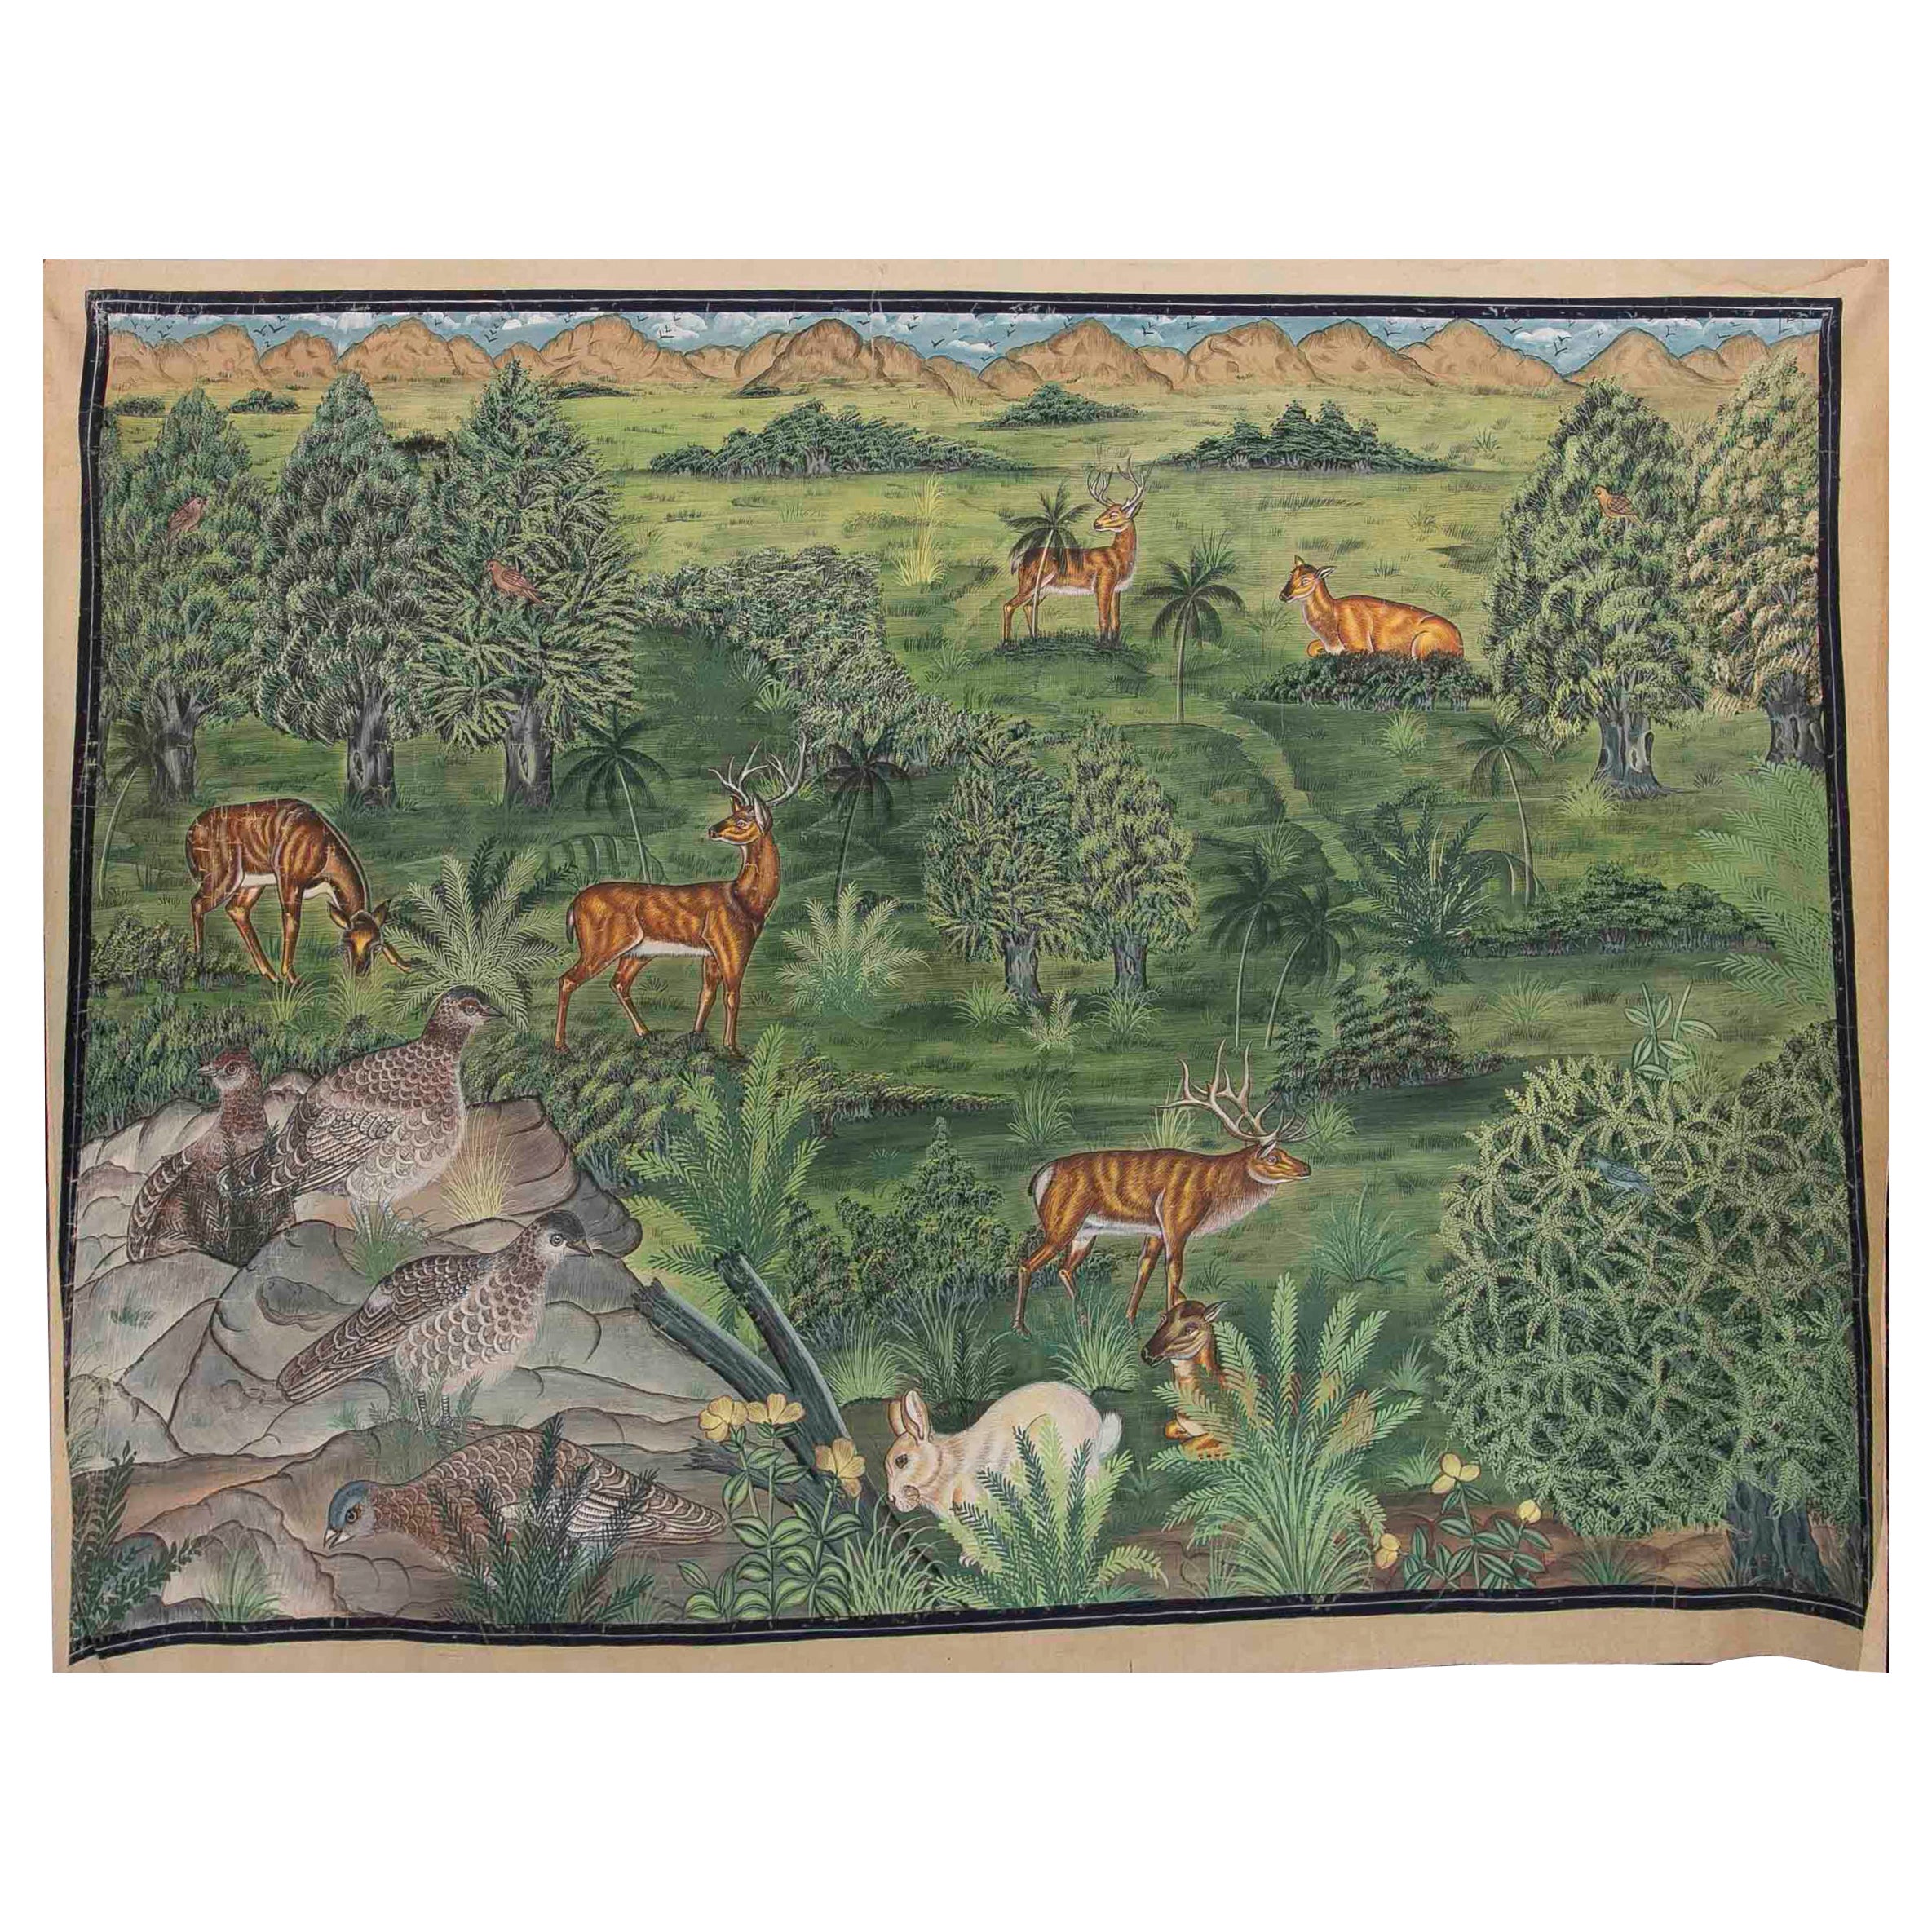 Peinture sur toile d'un paysage avec des fleurs et des animaux tels que des cerfs